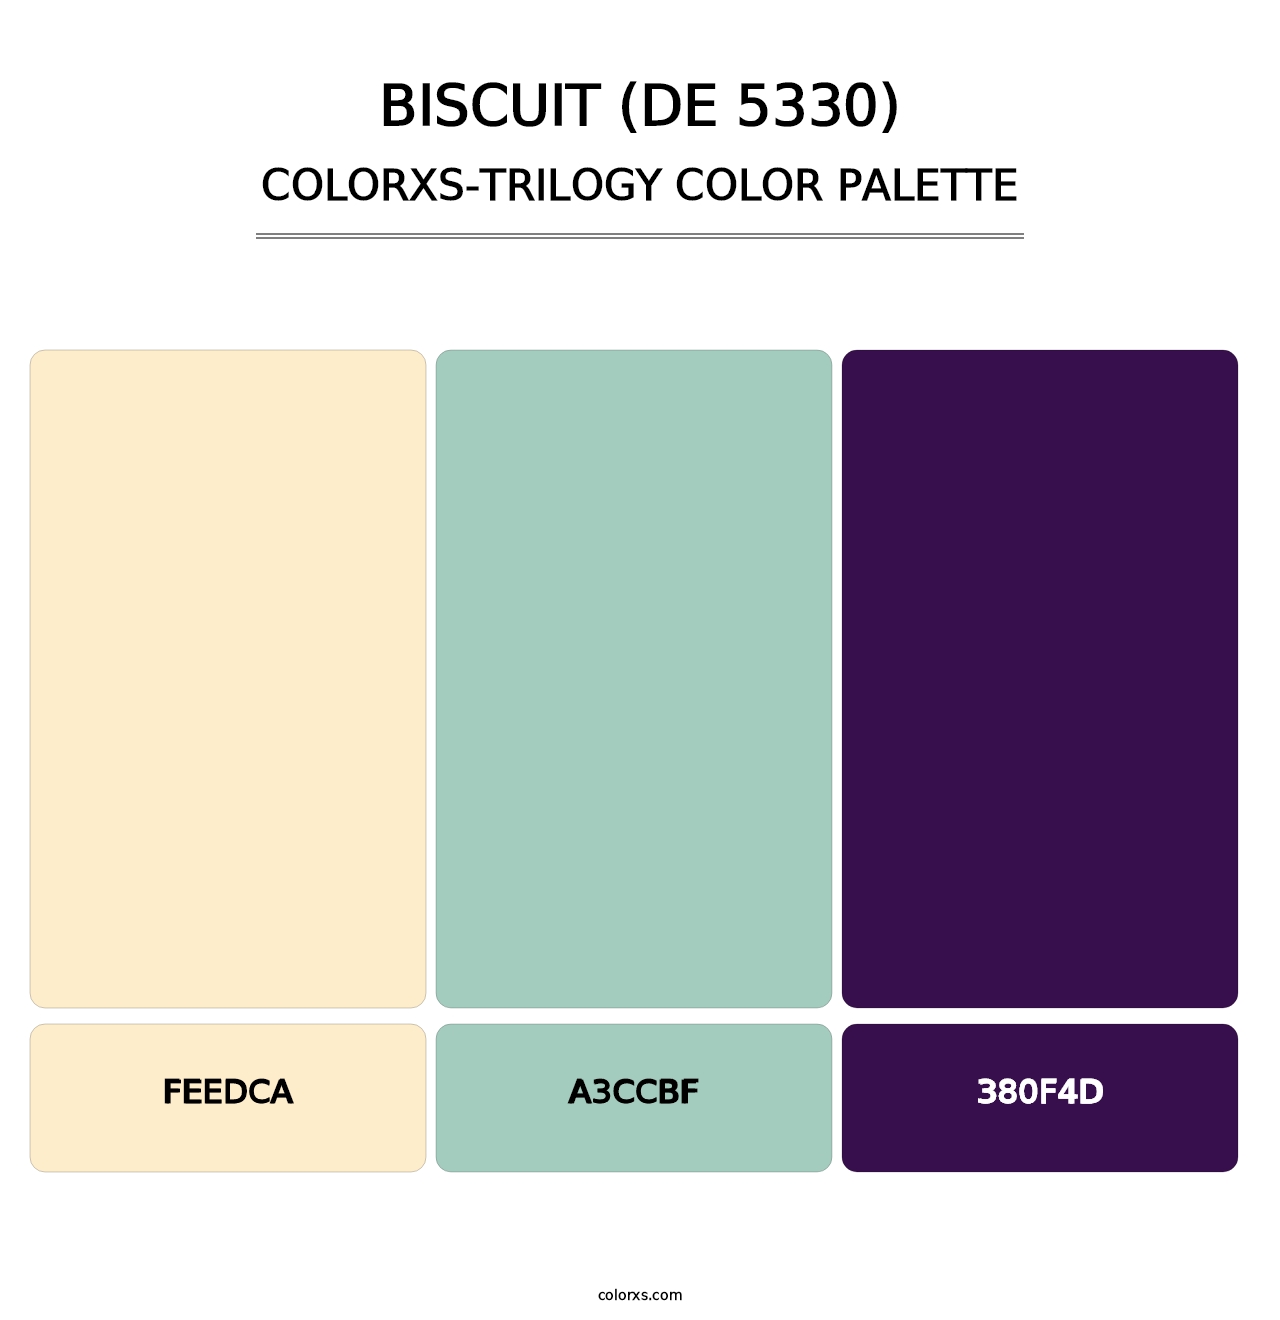 Biscuit (DE 5330) - Colorxs Trilogy Palette